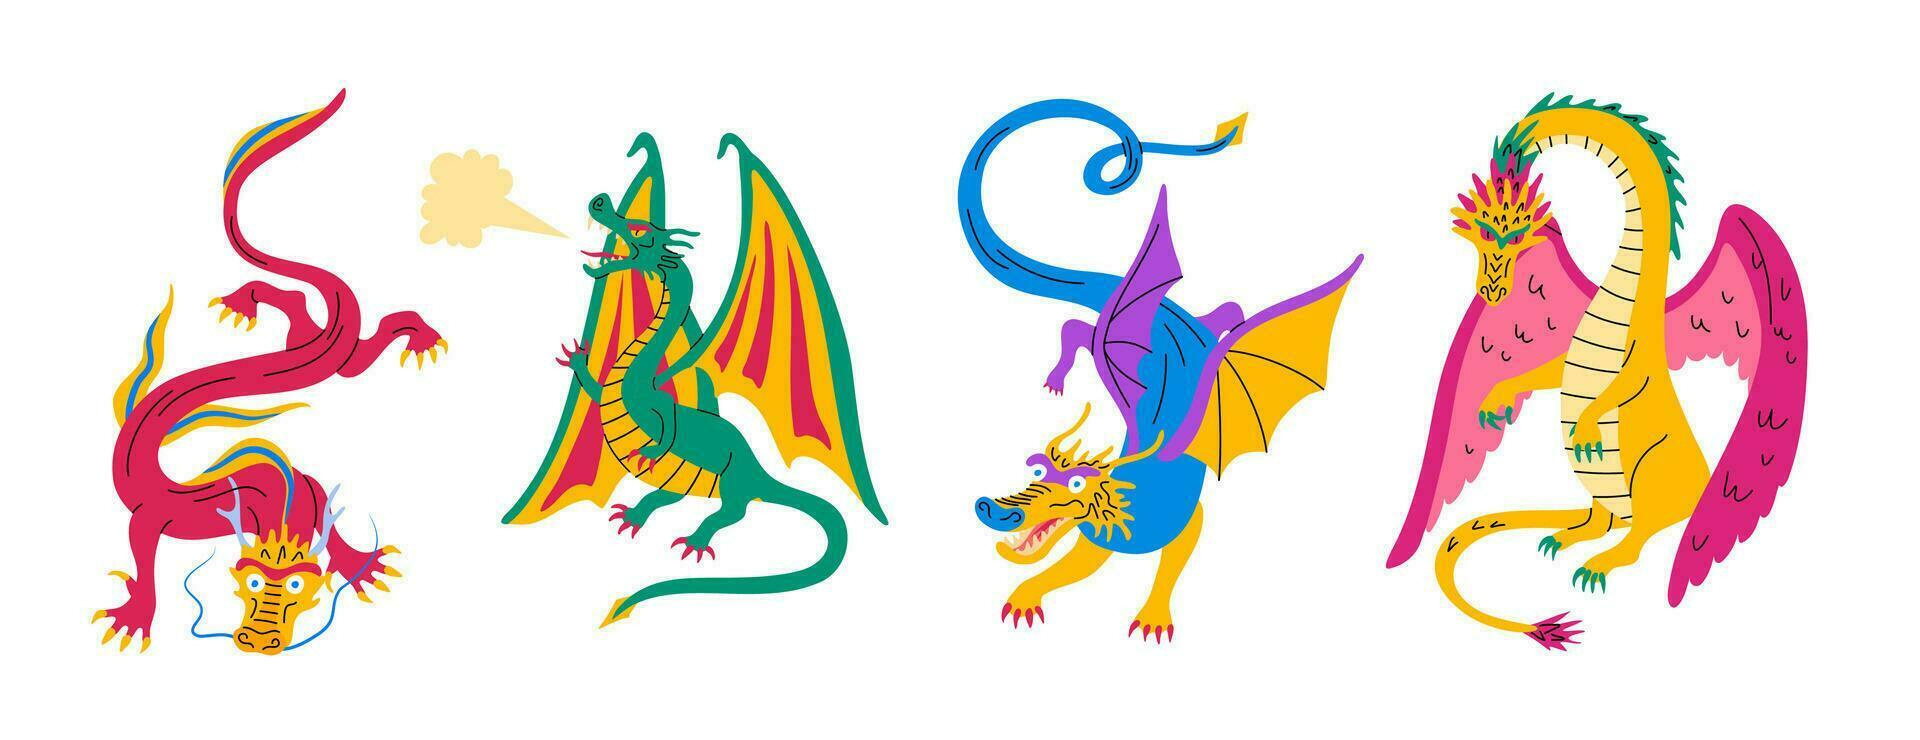 desenho animado cor diferente personagens dragões definir. vetor